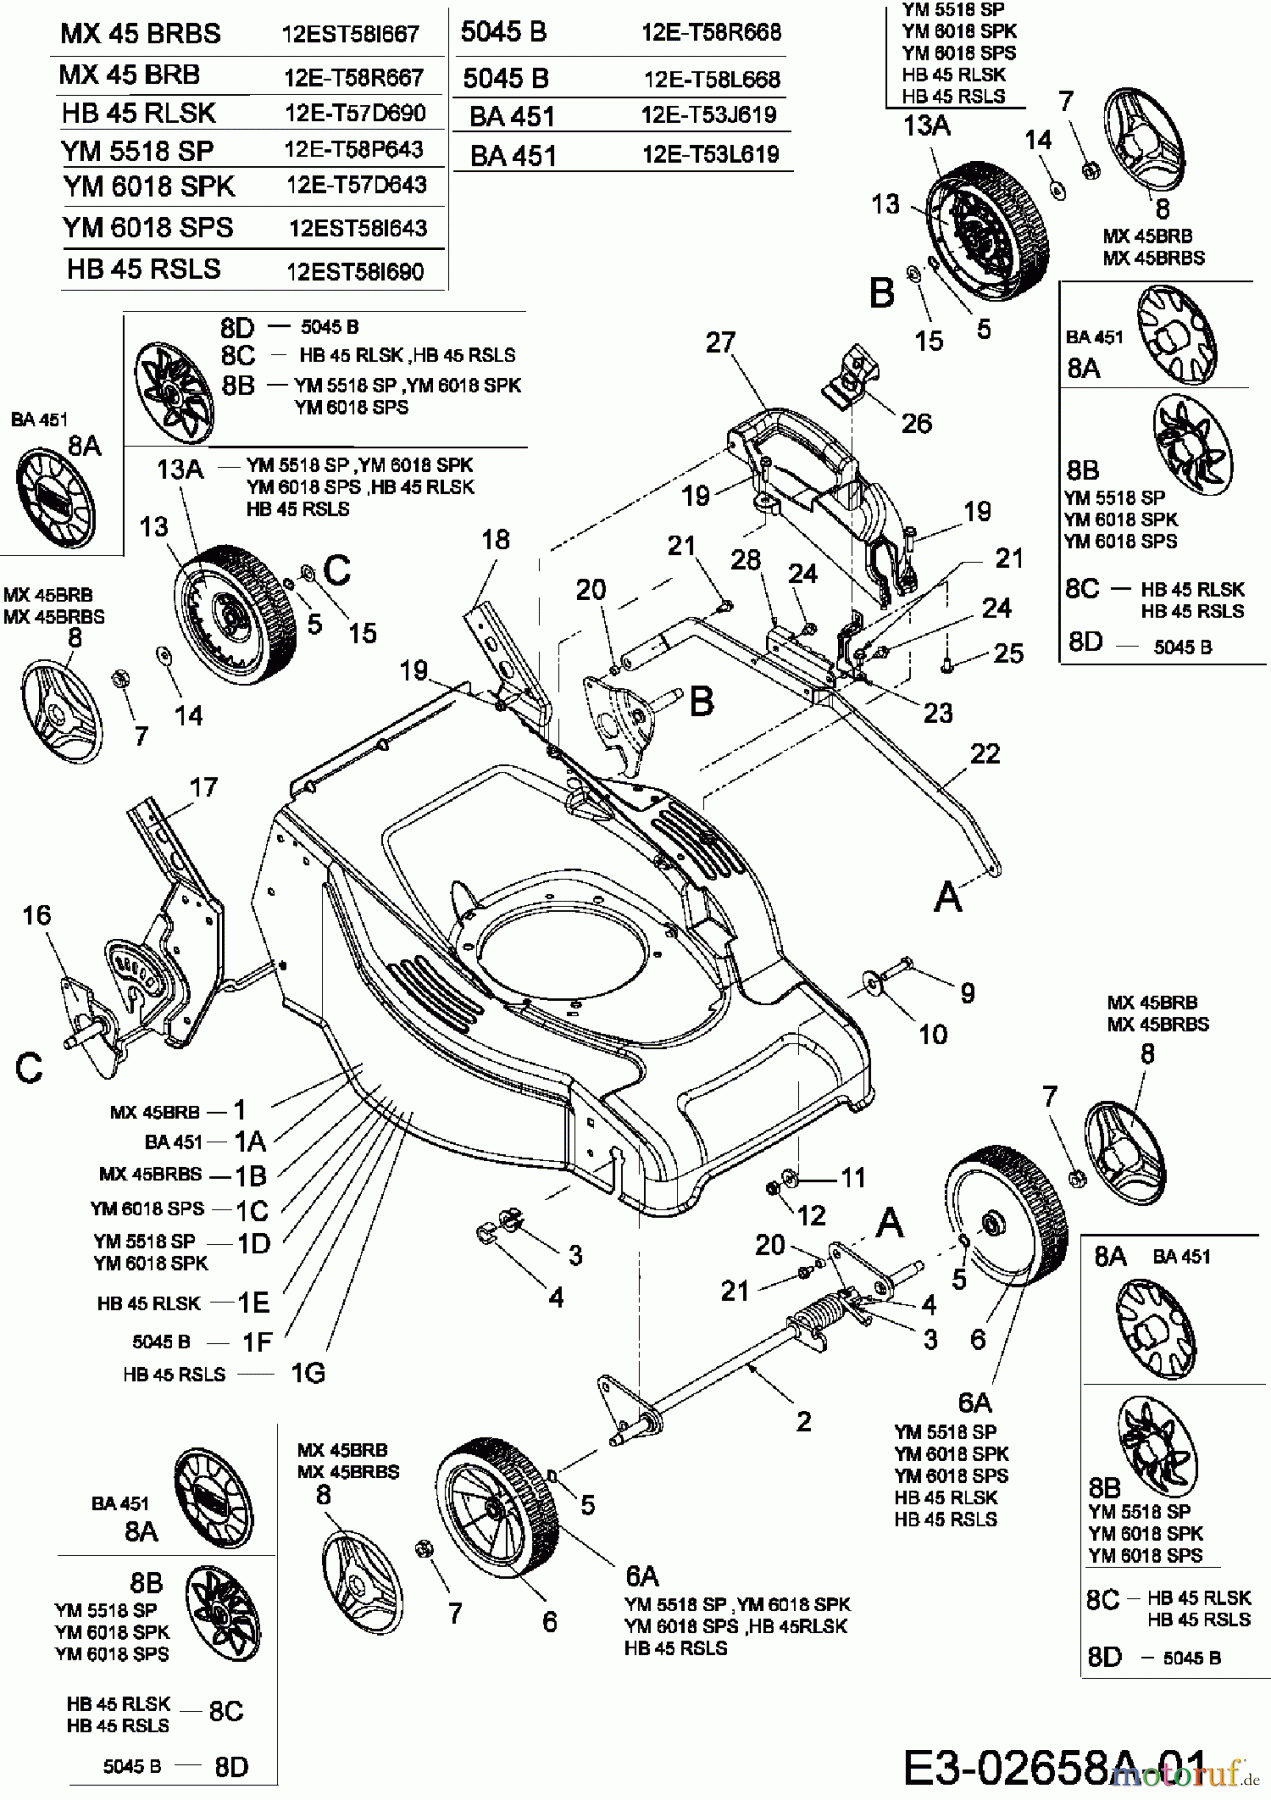  Gutbrod Motormäher mit Antrieb HB 45 RLSK 12E-T57D690  (2006) Räder, Schnitthöhenverstellung